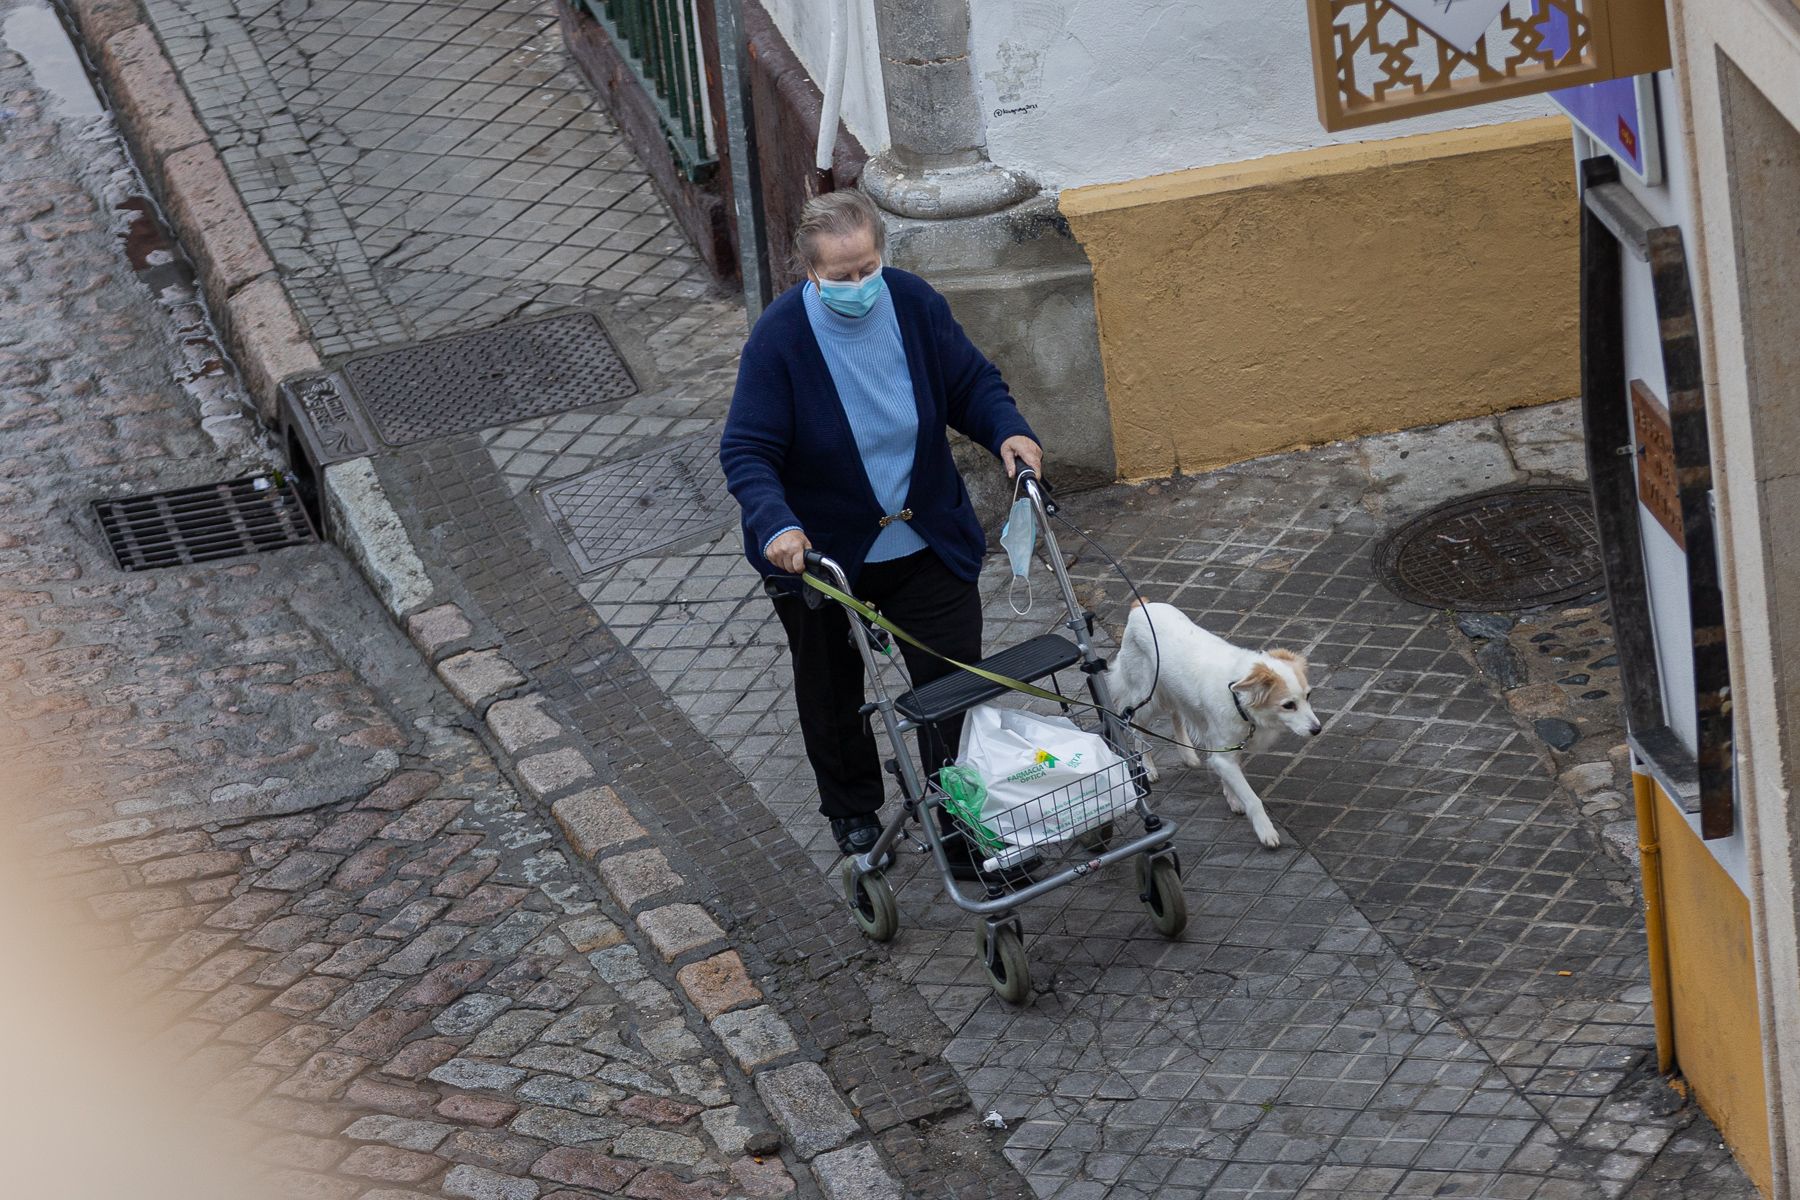 Una señora mayor pasea a su perro, con la mascarilla obligatoria en exteriores, en una imagen reciente.